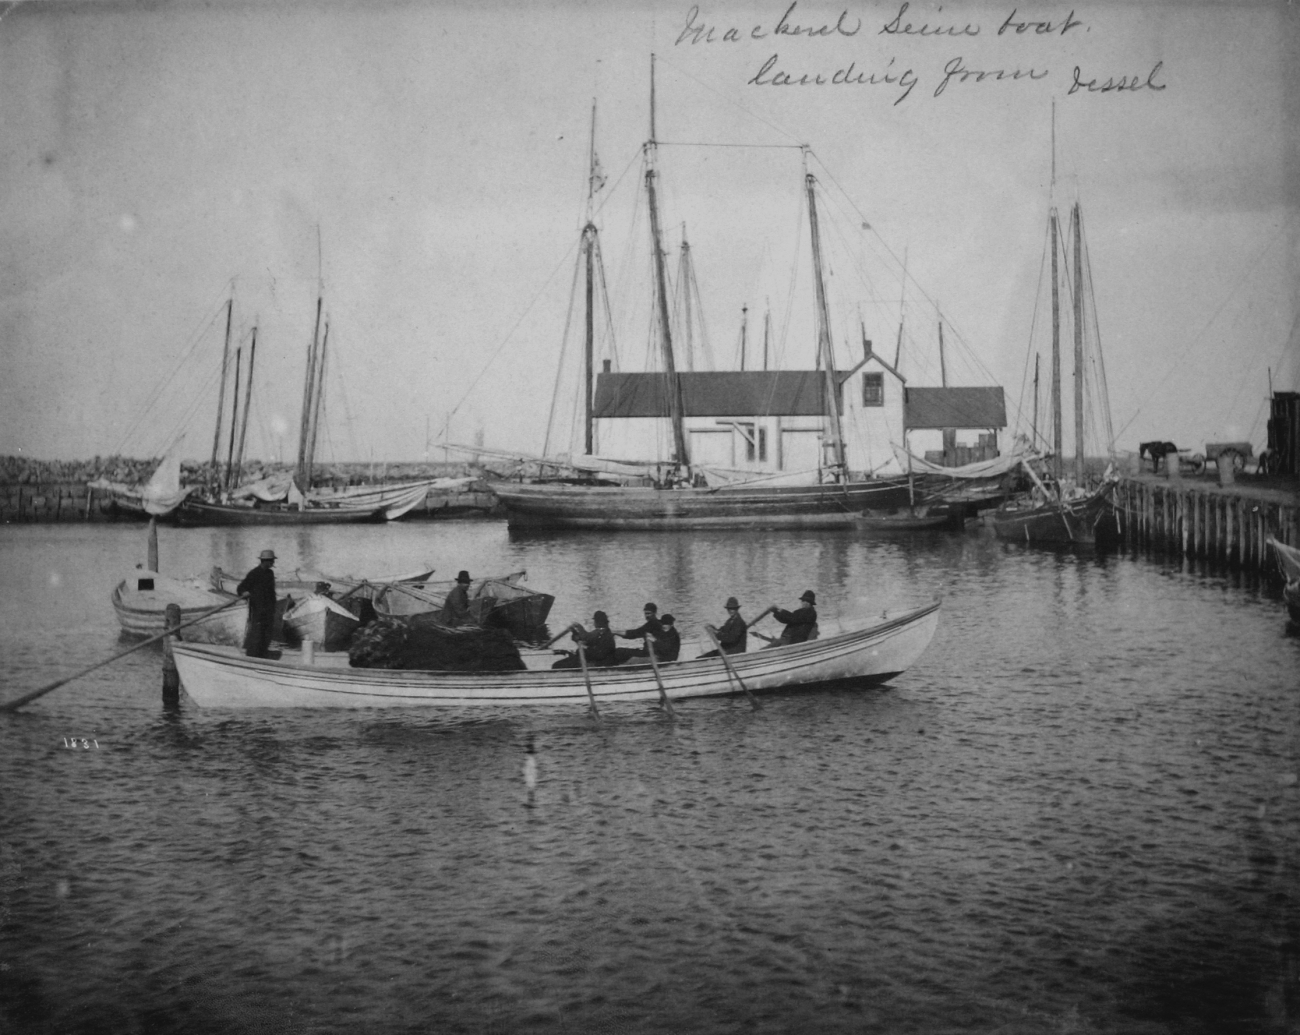 Mackerel seine boat, landing from vessel